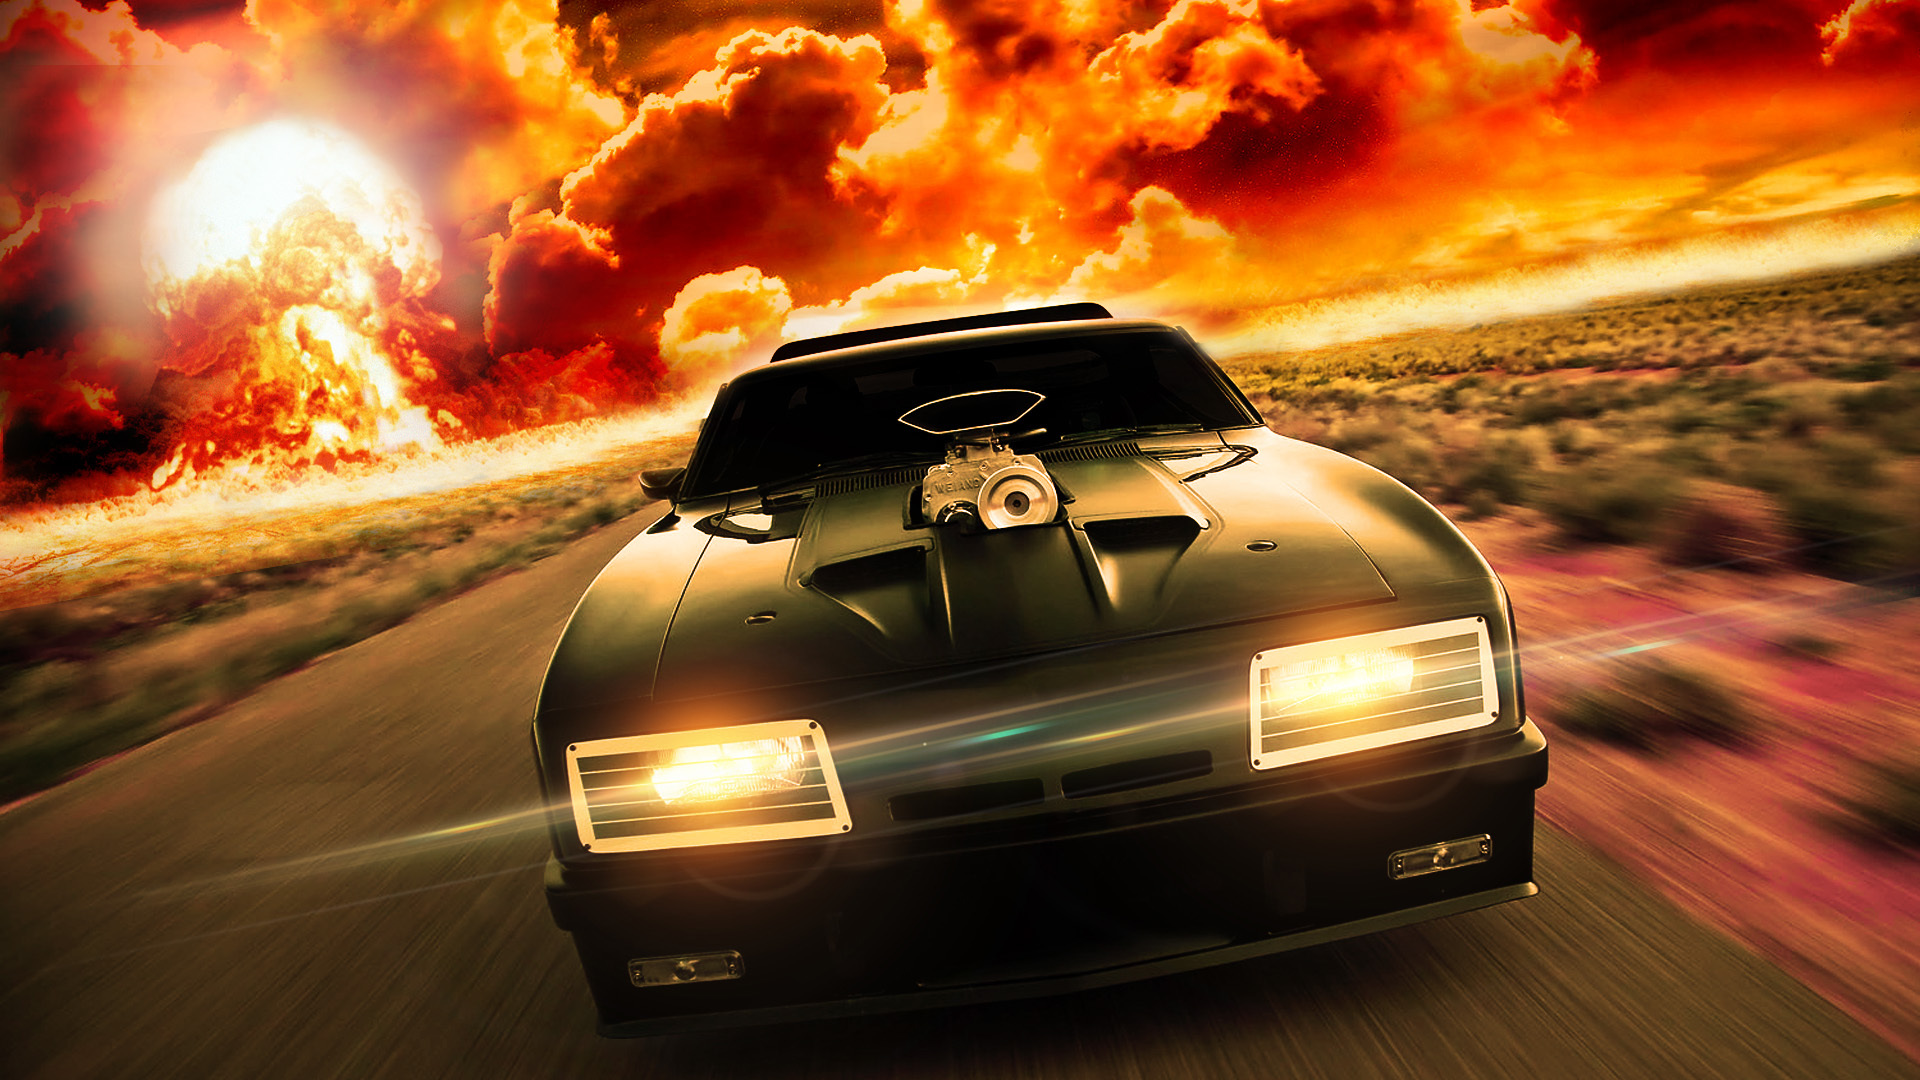 High Speed Car On A Background Of Fire Desktop Wallpaper